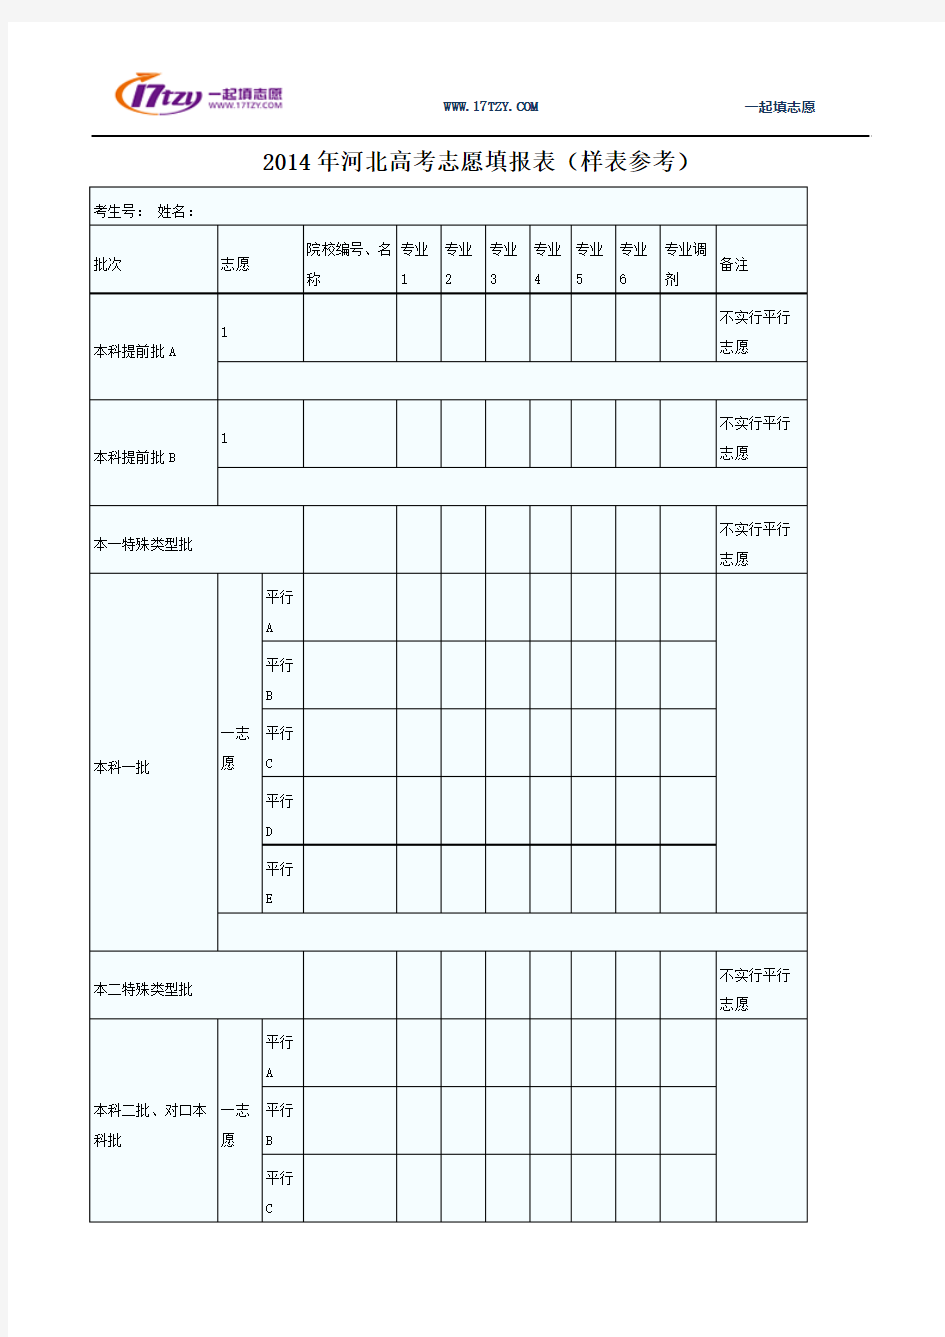 2014年河北高考志愿填报表(样表参考)